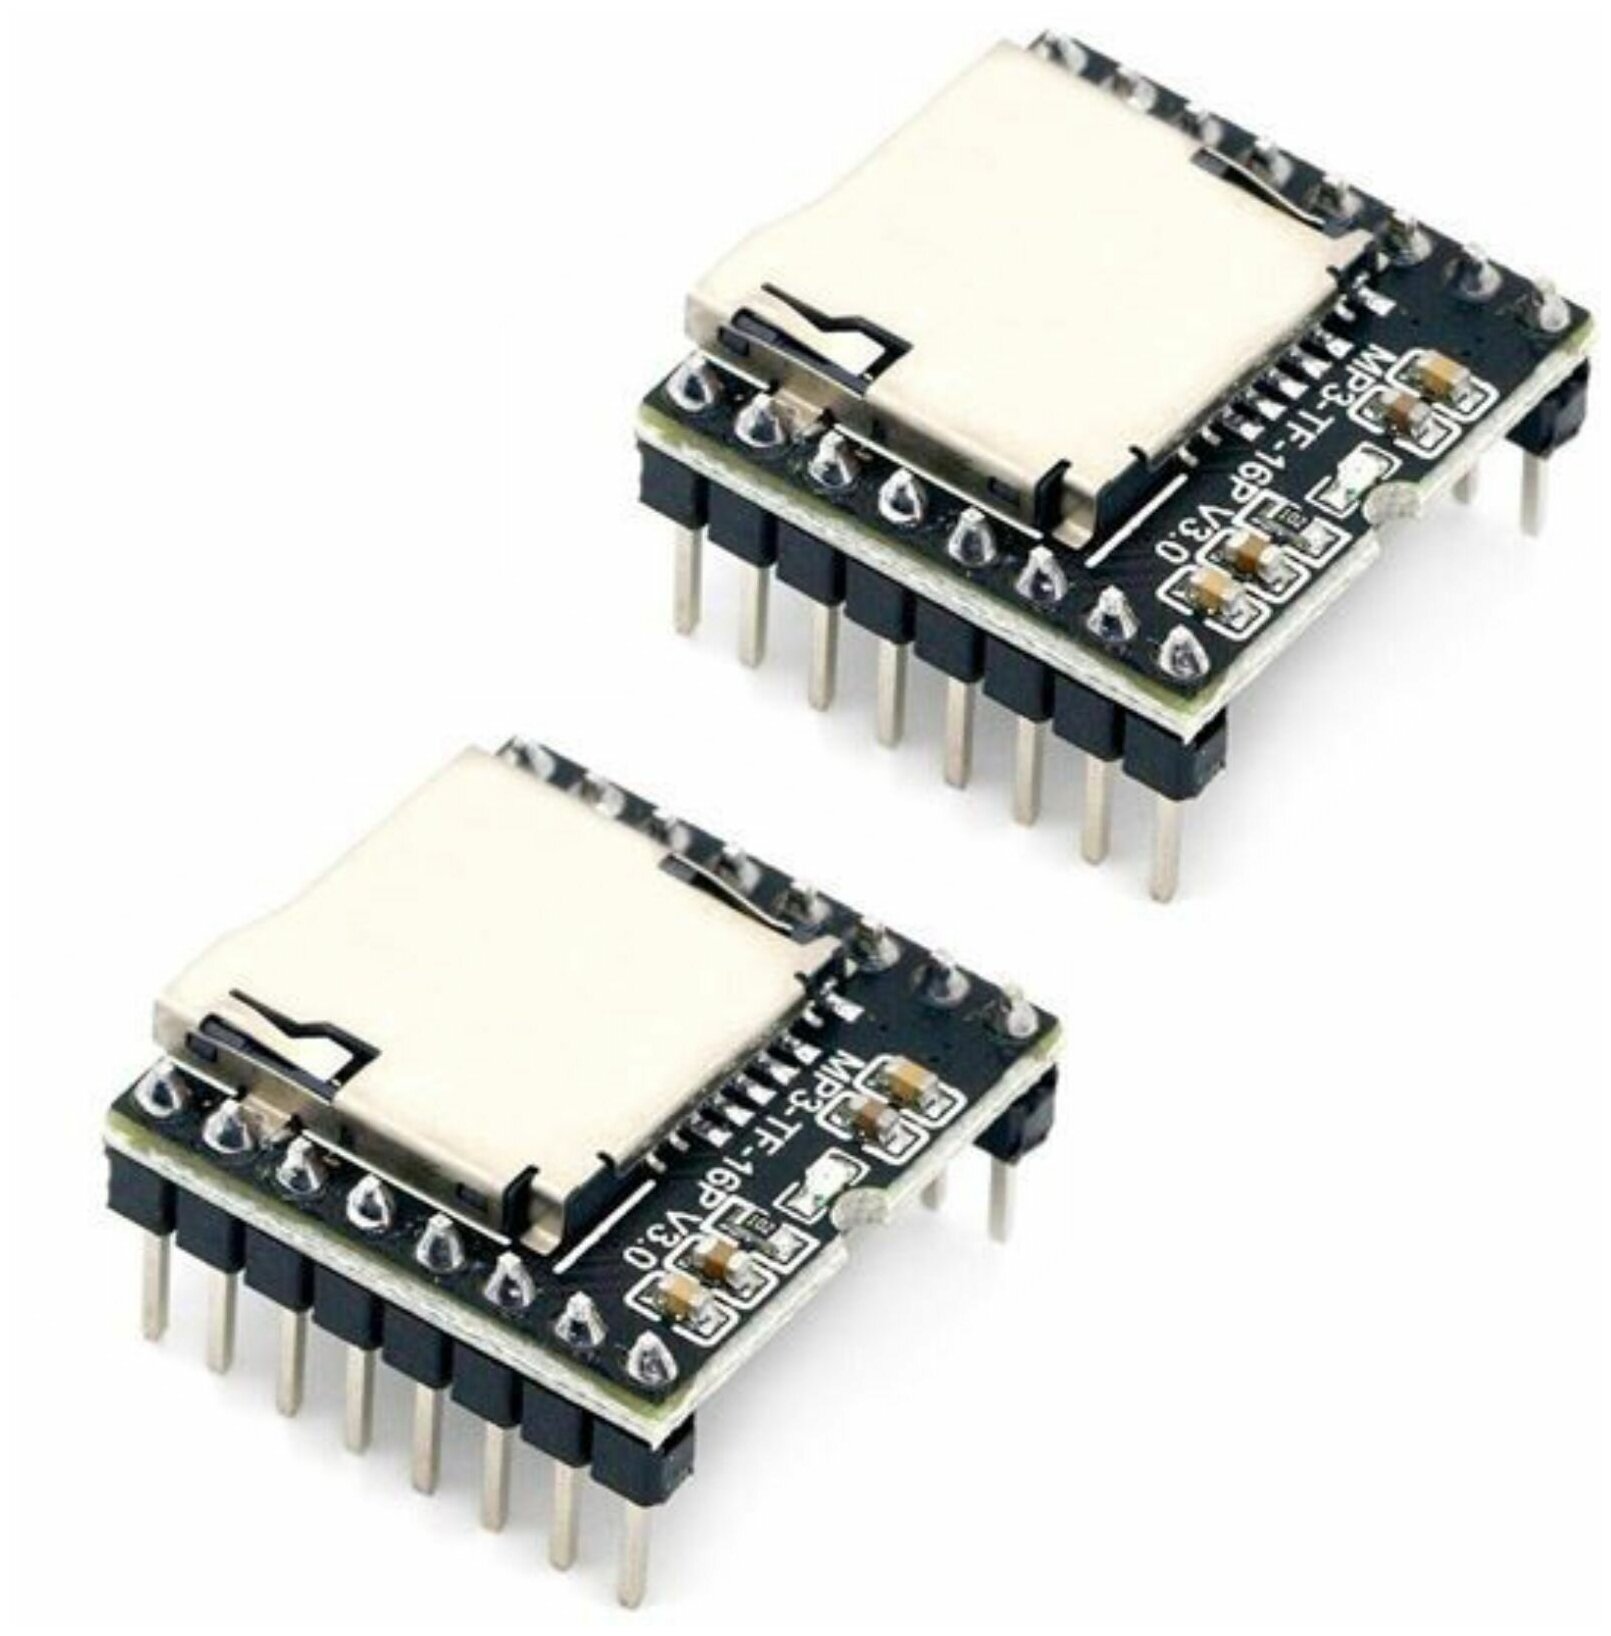 2 штуки! Звуковой модуль DFPlayer с micro SD слотом управляемый с помощью Arduino / MP3-TF-16P (Н)